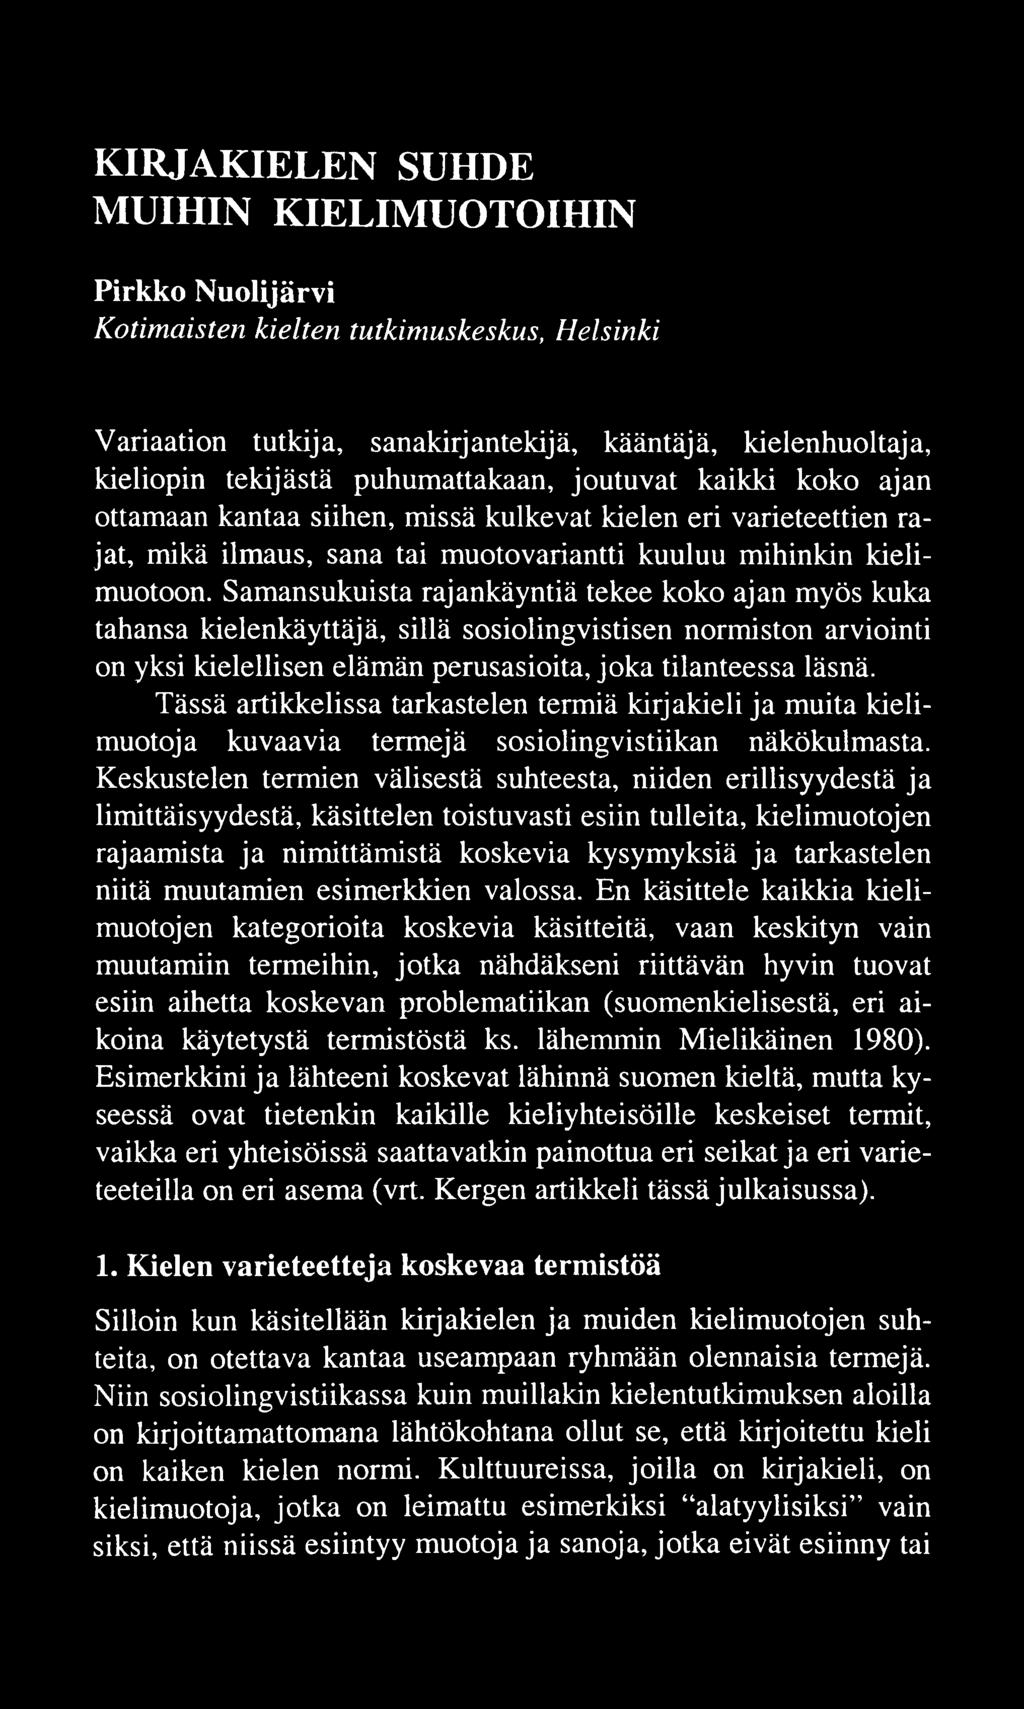 KIRJAKIELEN SUHDE MUIHIN KIELIMUOTOIHIN Pirkko Nuolijärvi Kotimaisten kielten tutkimuskeskus, Helsinki Variaation tutkija, sanakirjantekijä, kääntäjä, kielenhuoltaja, kieliopin tekijästä